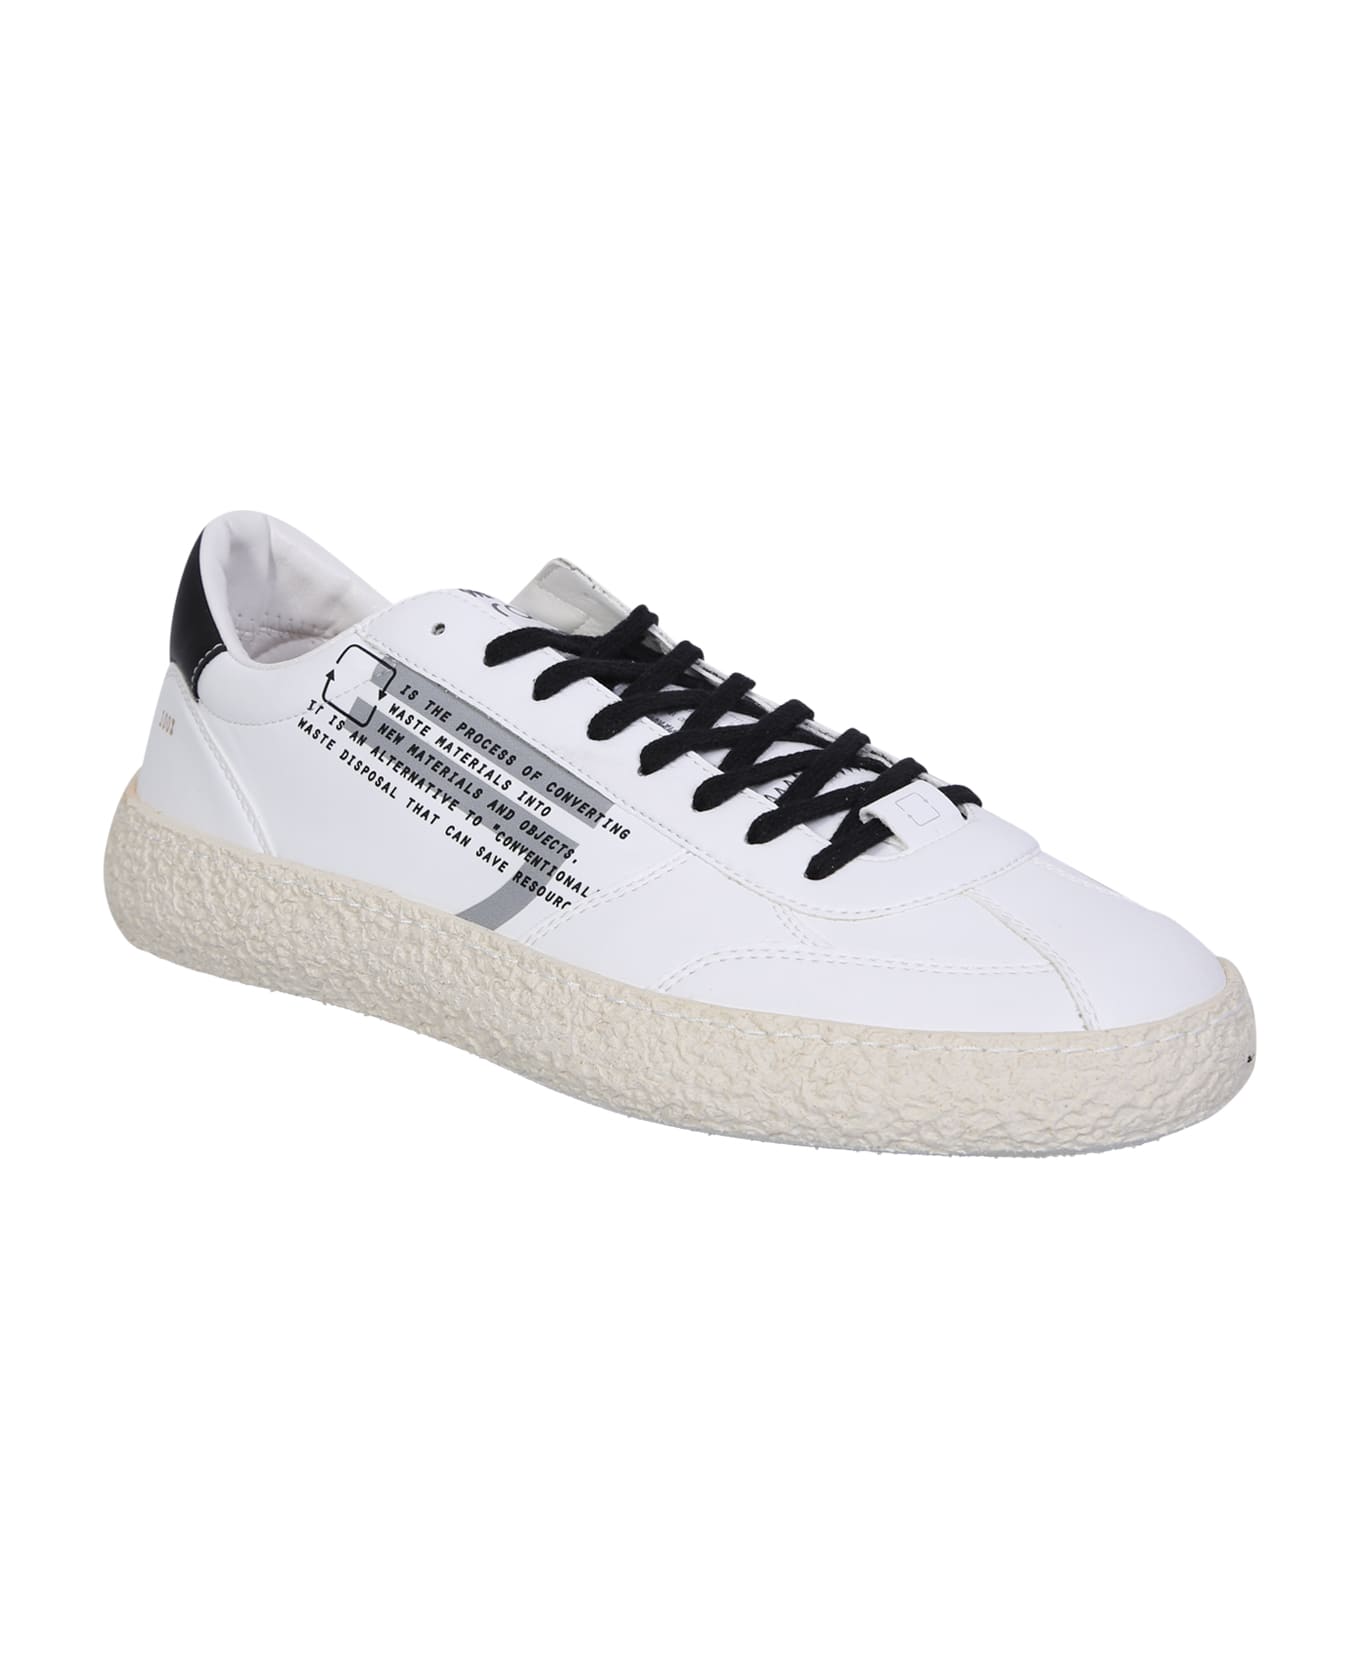 Puraai Low Sneakers - White